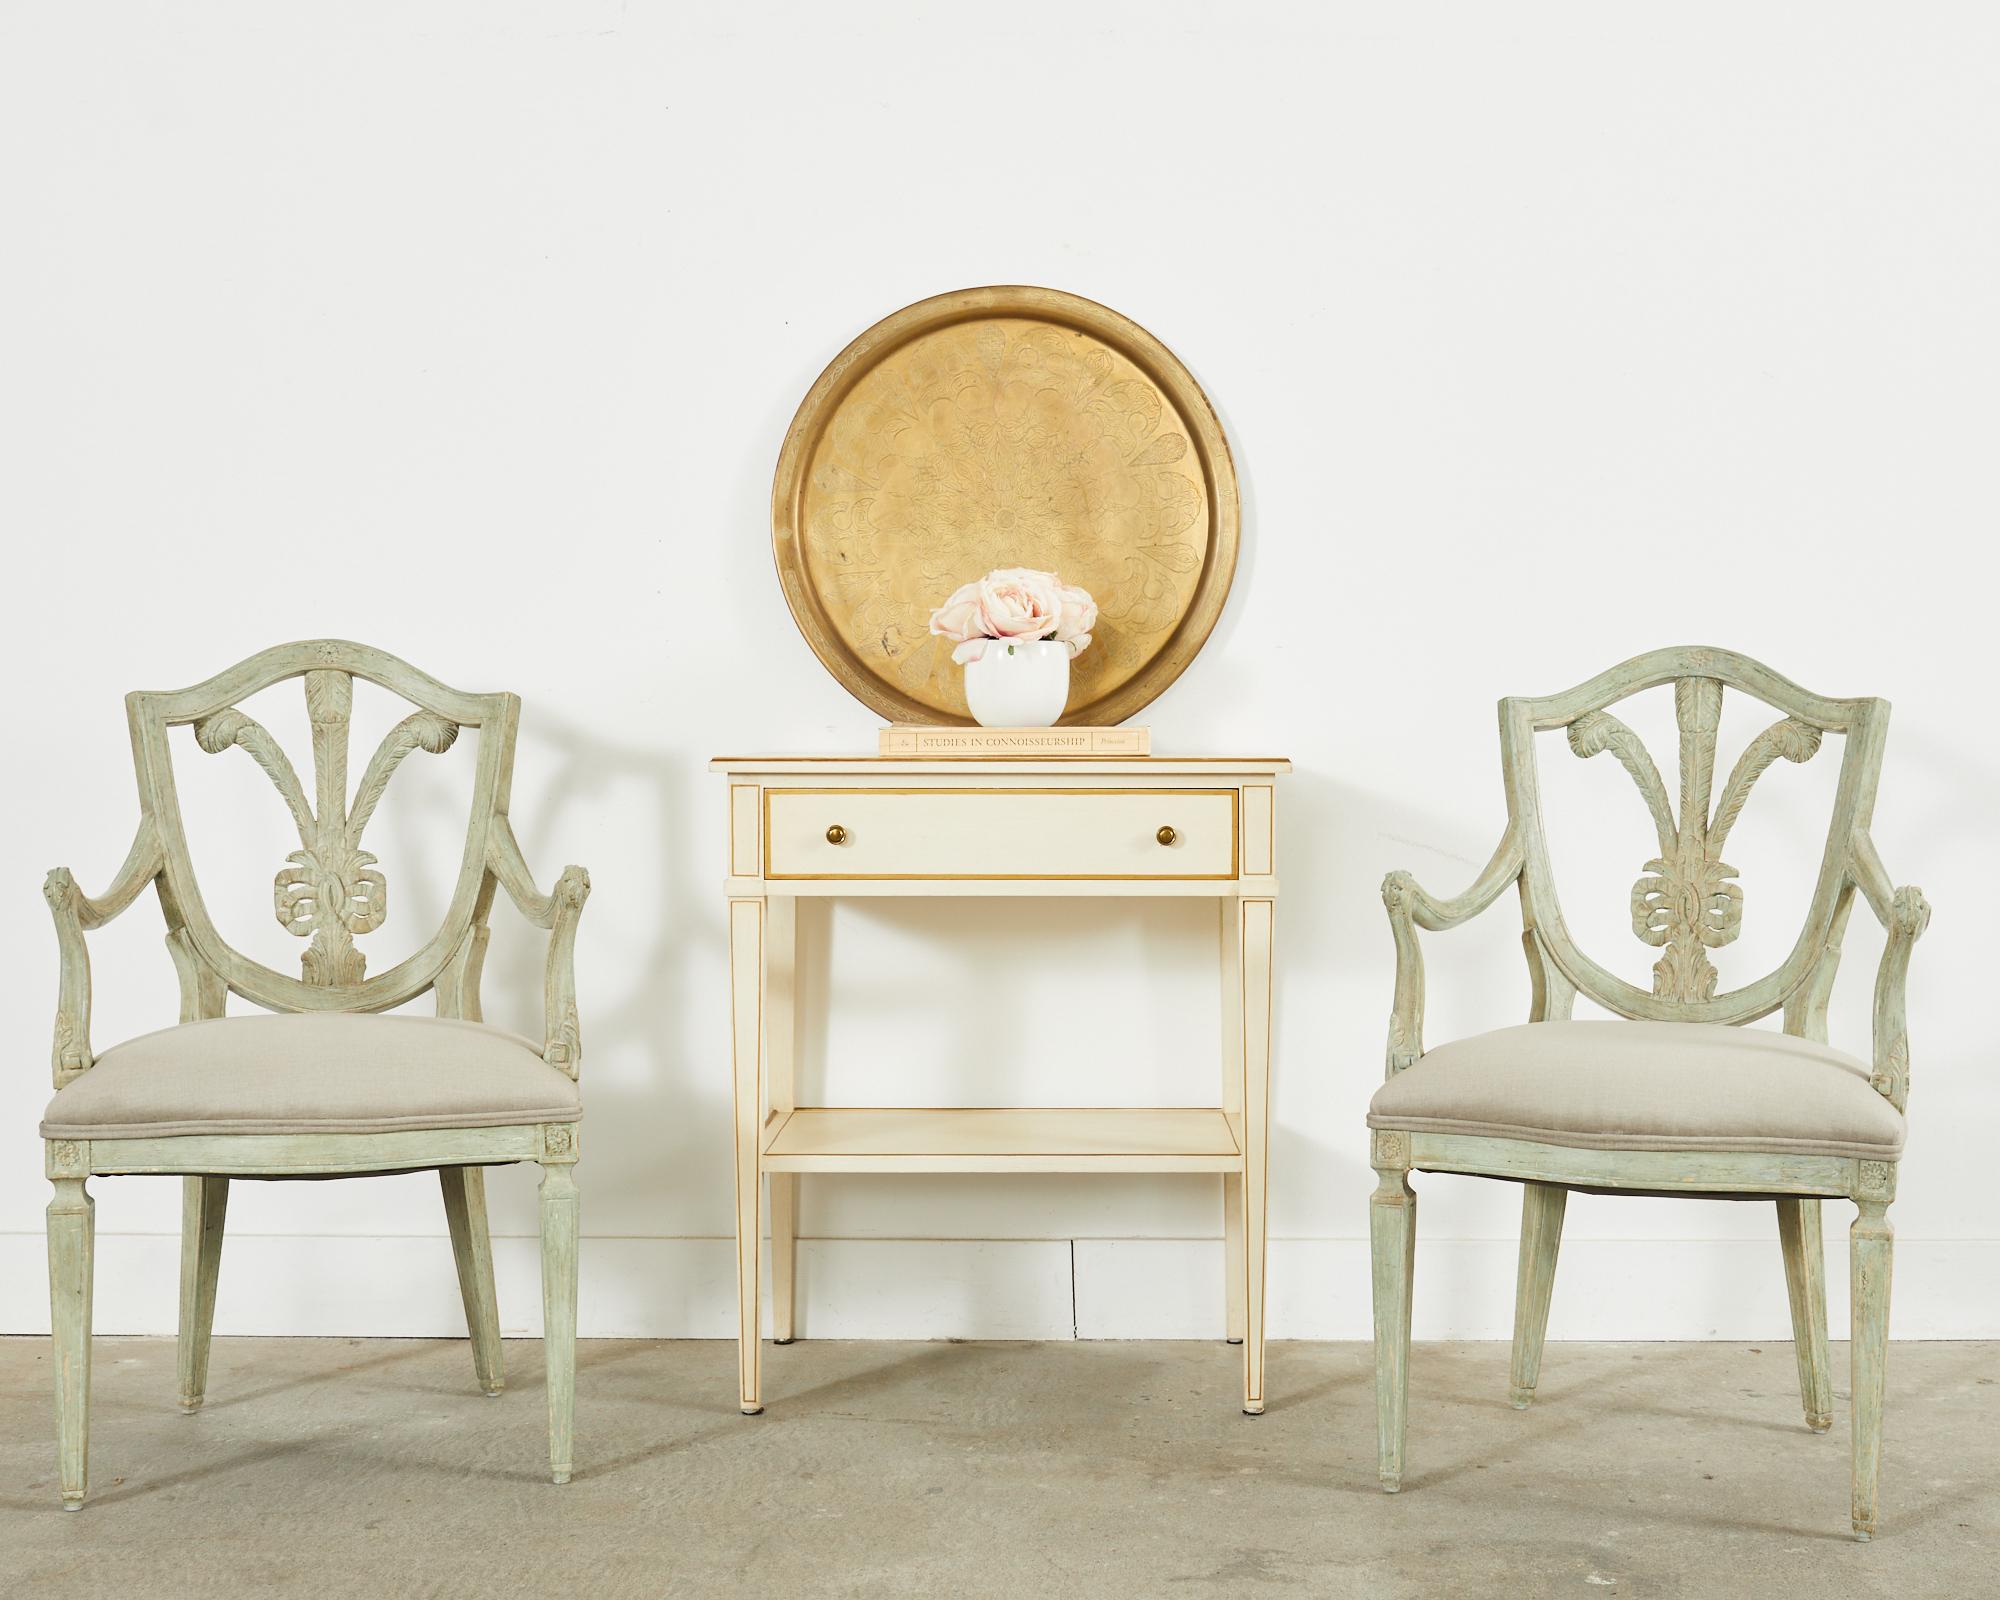 Ensemble distinctif de trois fauteuils de salle à manger conçus par Dennis & Leen Hollywood, CA. Connues sous le nom de chaises Brandelli, elles se caractérisent par un cadre sculpté décoré dans le goût de George III, avec un dossier en bouclier